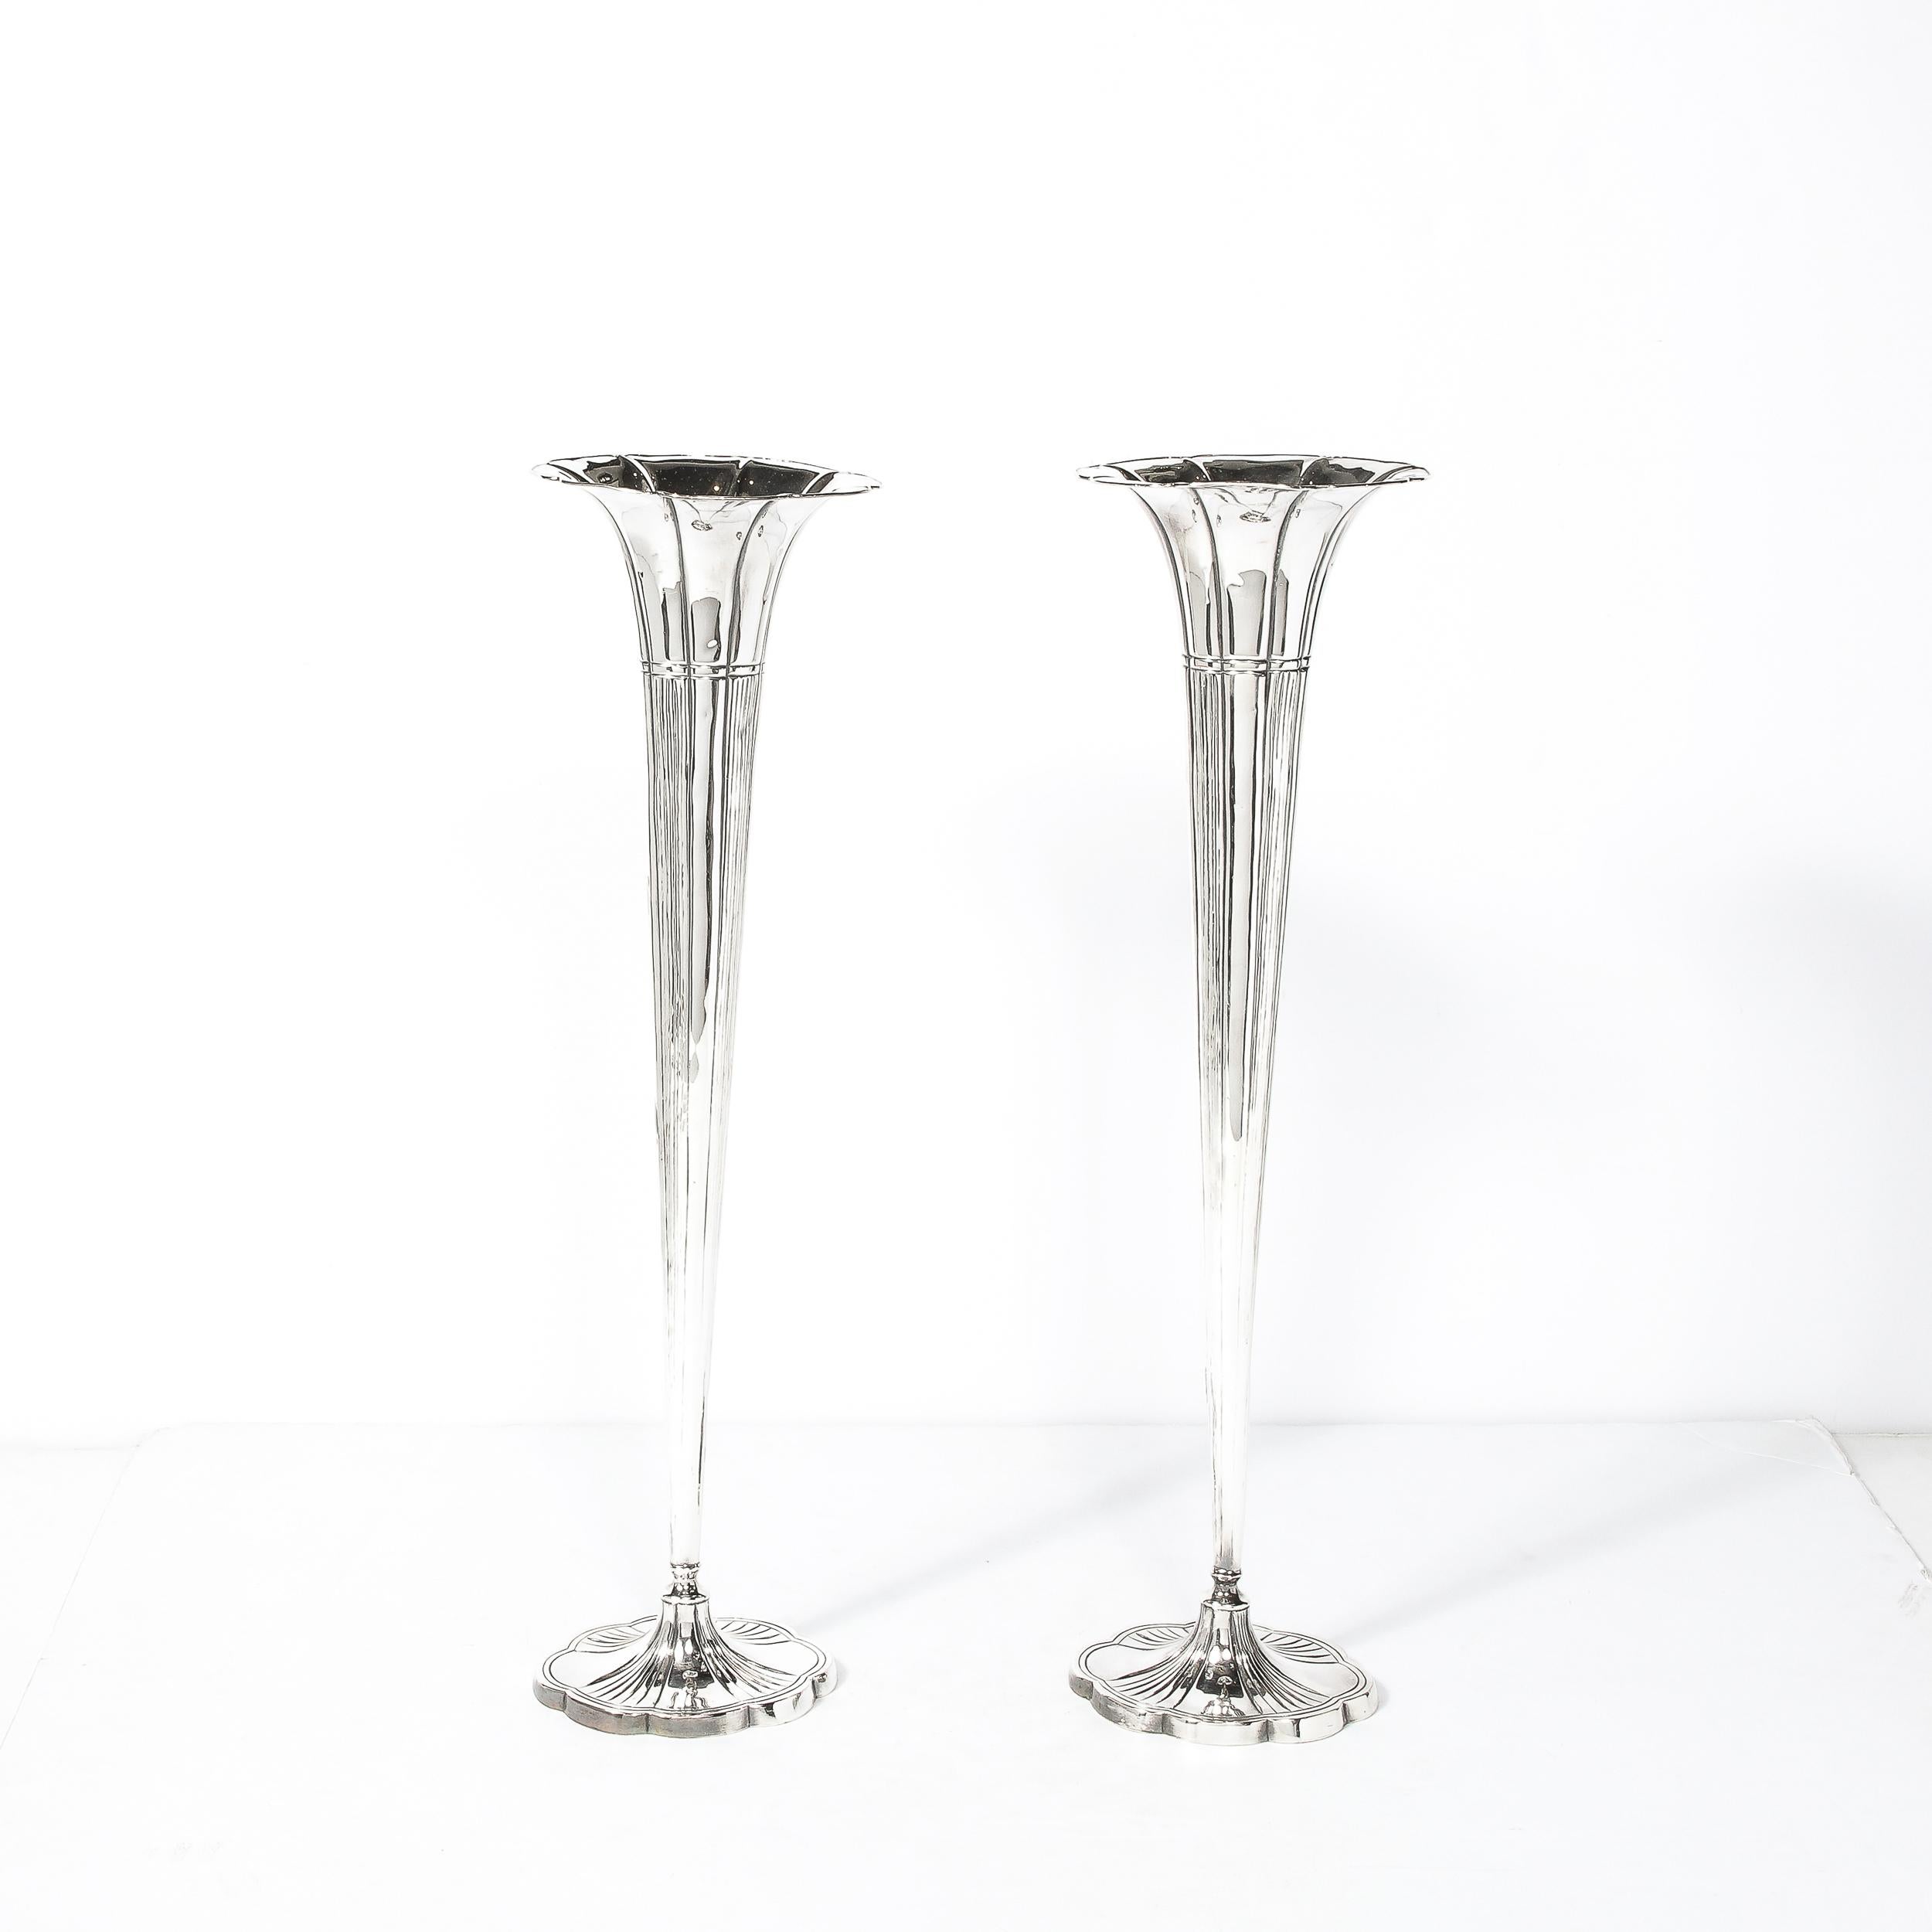 Dieses Paar von Art Deco Silber Platte geriffelte Trompete Vasen stammen aus den Vereinigten Staaten CIRCA 1930. 
Sie sind elegant, hoch und schlank und schaffen ein schönes Gleichgewicht zwischen geometrischem Design und der Ausführung in